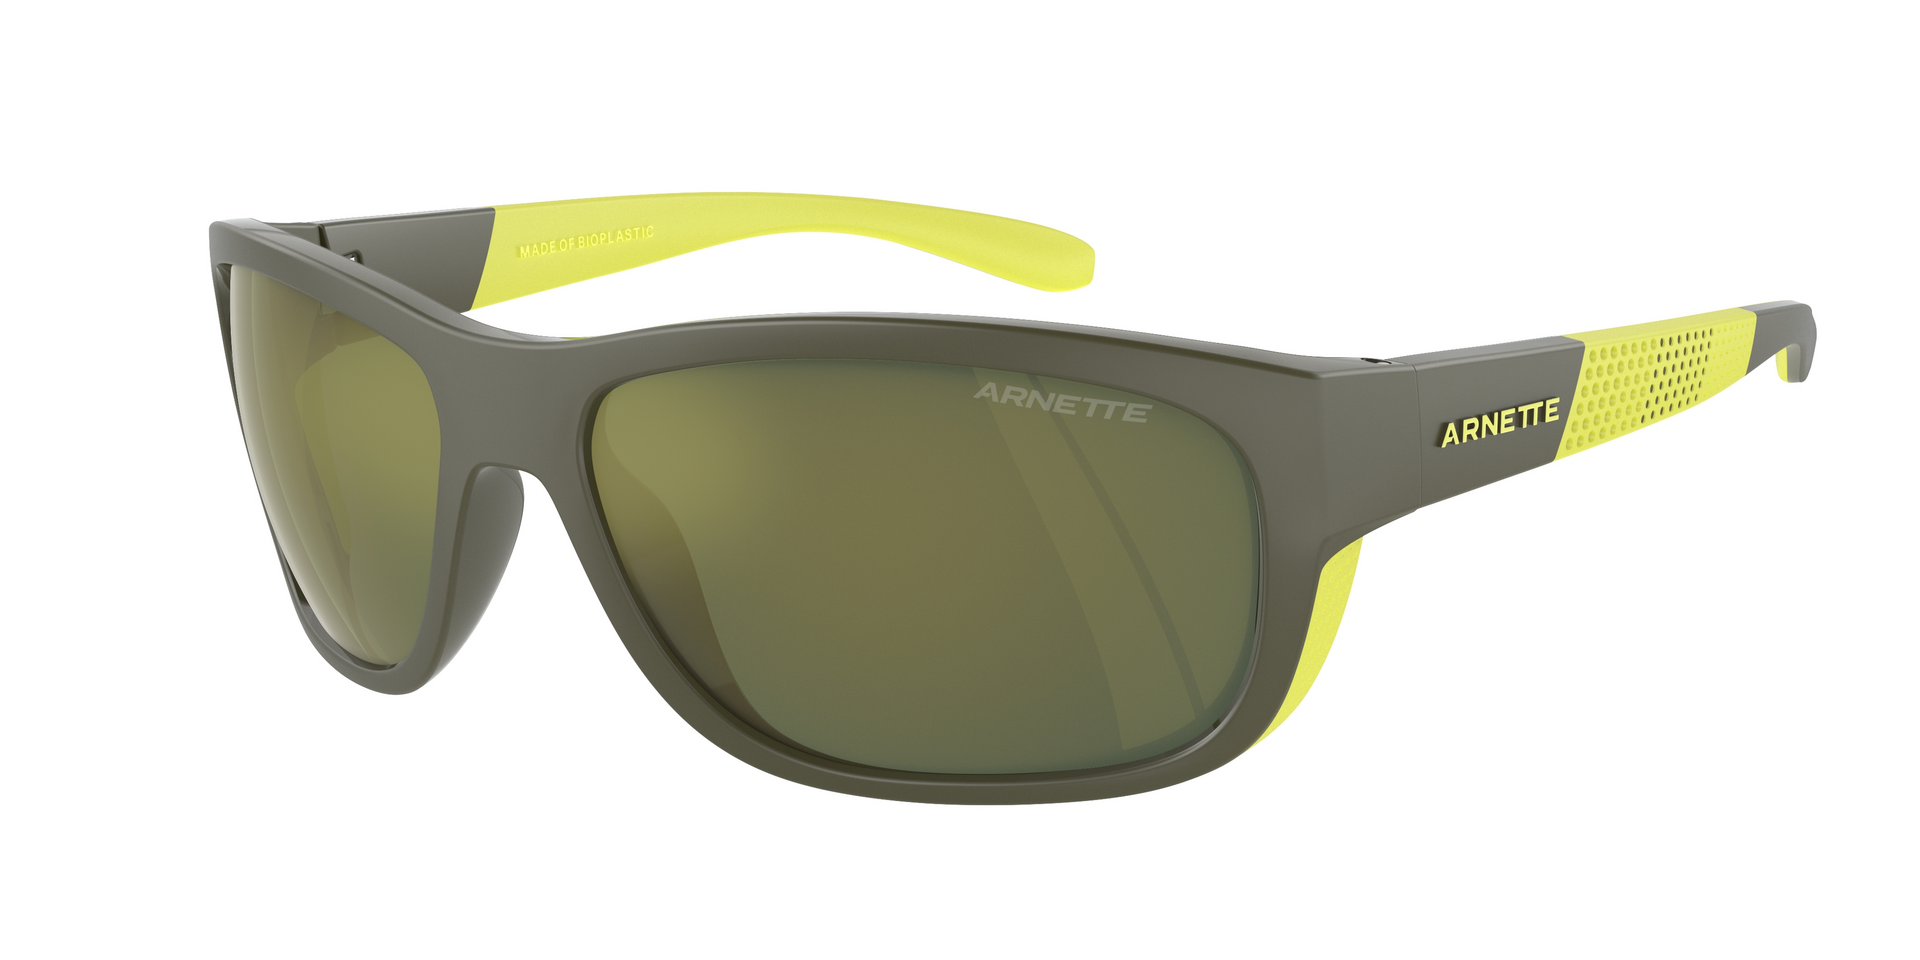 Das Bild zeigt die Sonnenbrille AN4337 28546R von der Marke Arnette in grau/gelb.